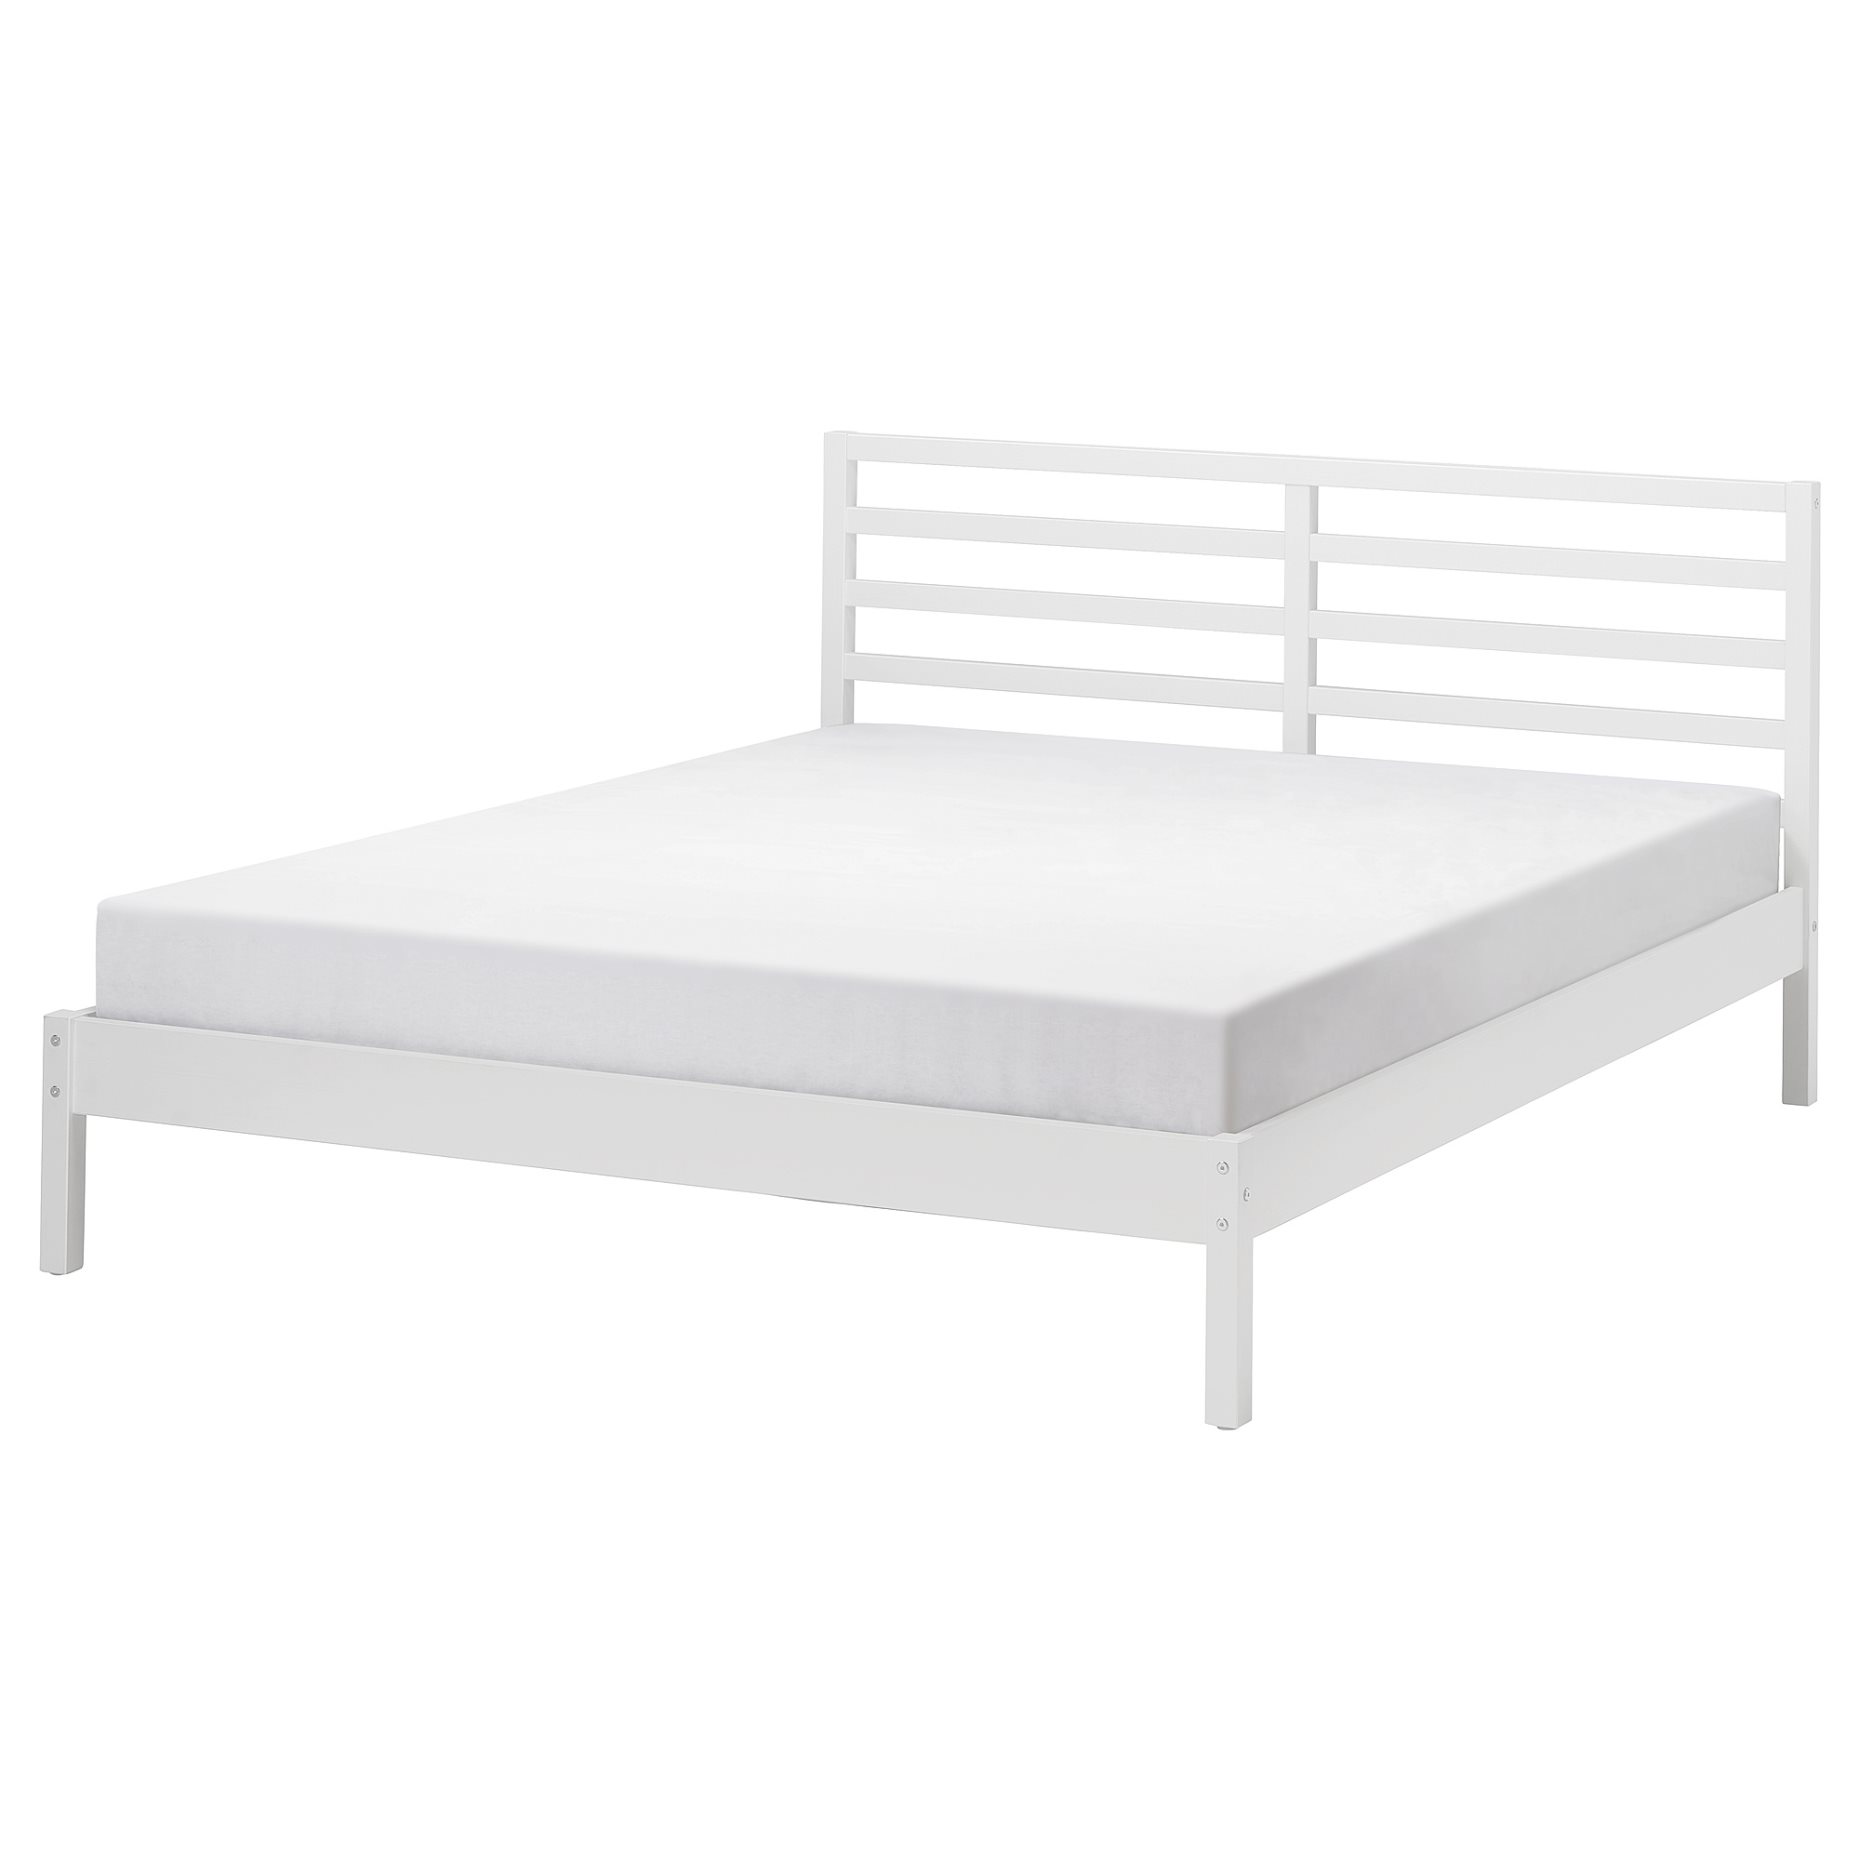 TARVA, bed frame, 160x200 cm, 095.539.73